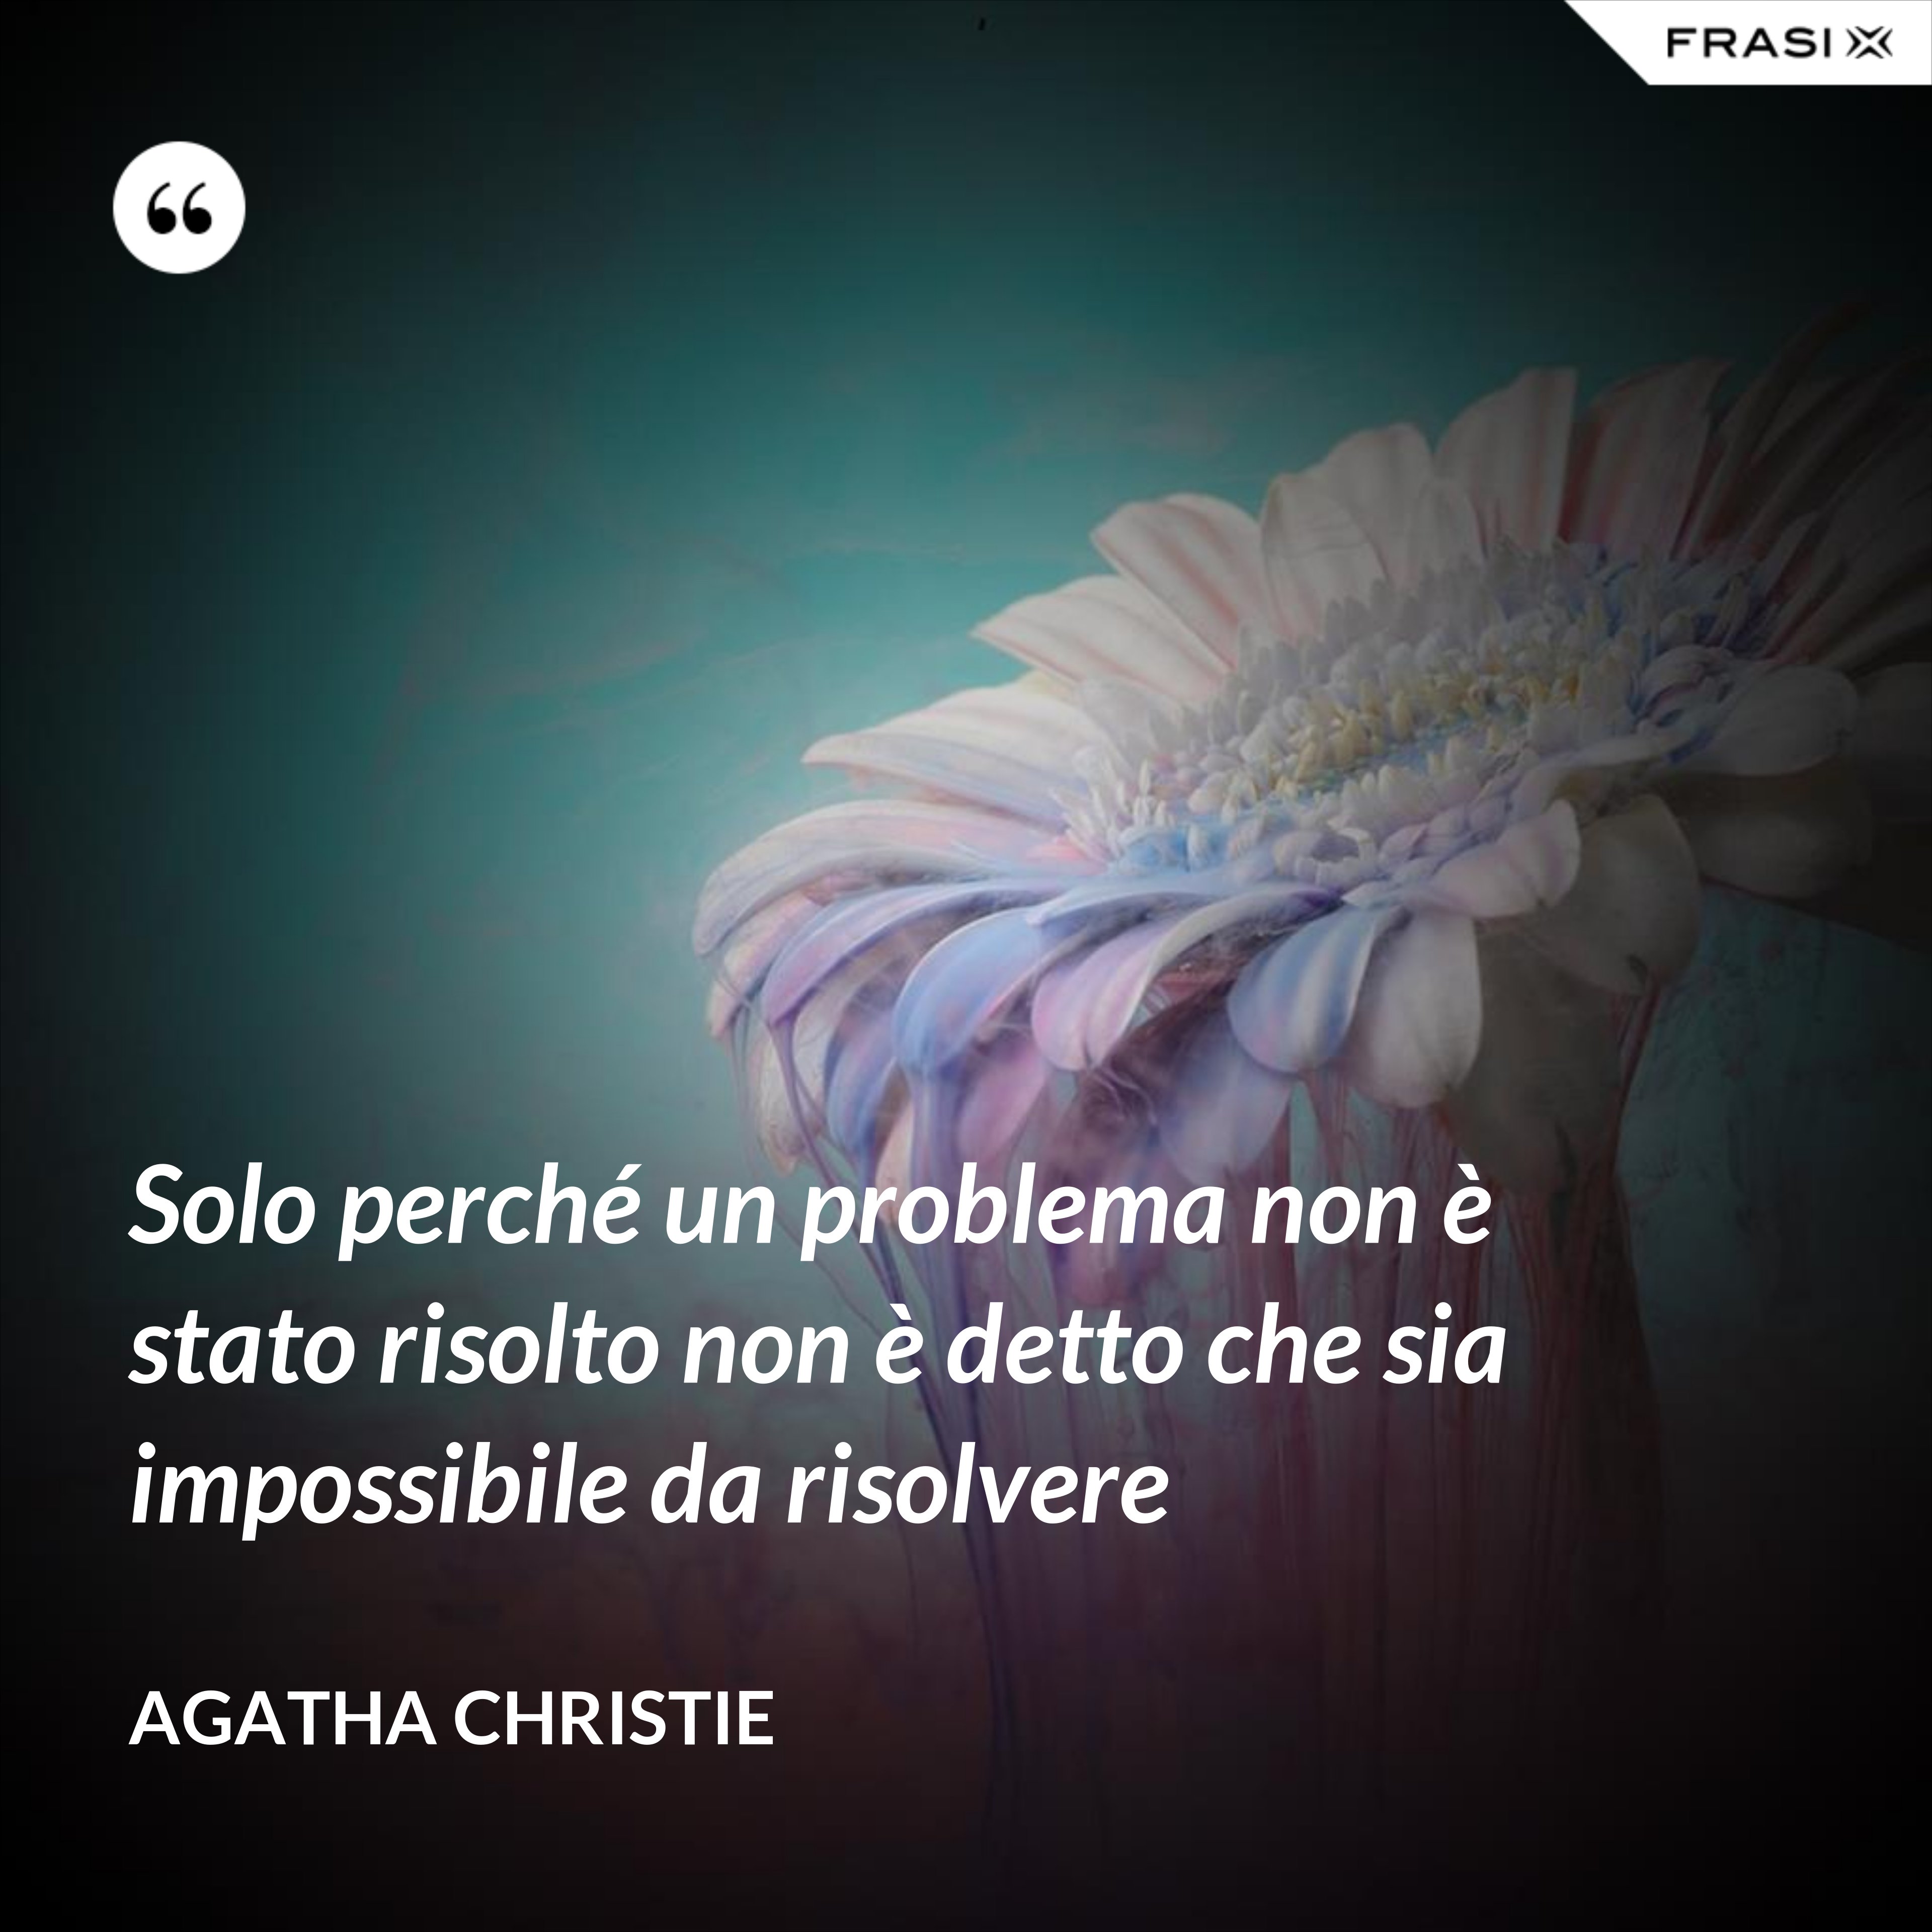 Solo perché un problema non è stato risolto non è detto che sia impossibile da risolvere - Agatha Christie